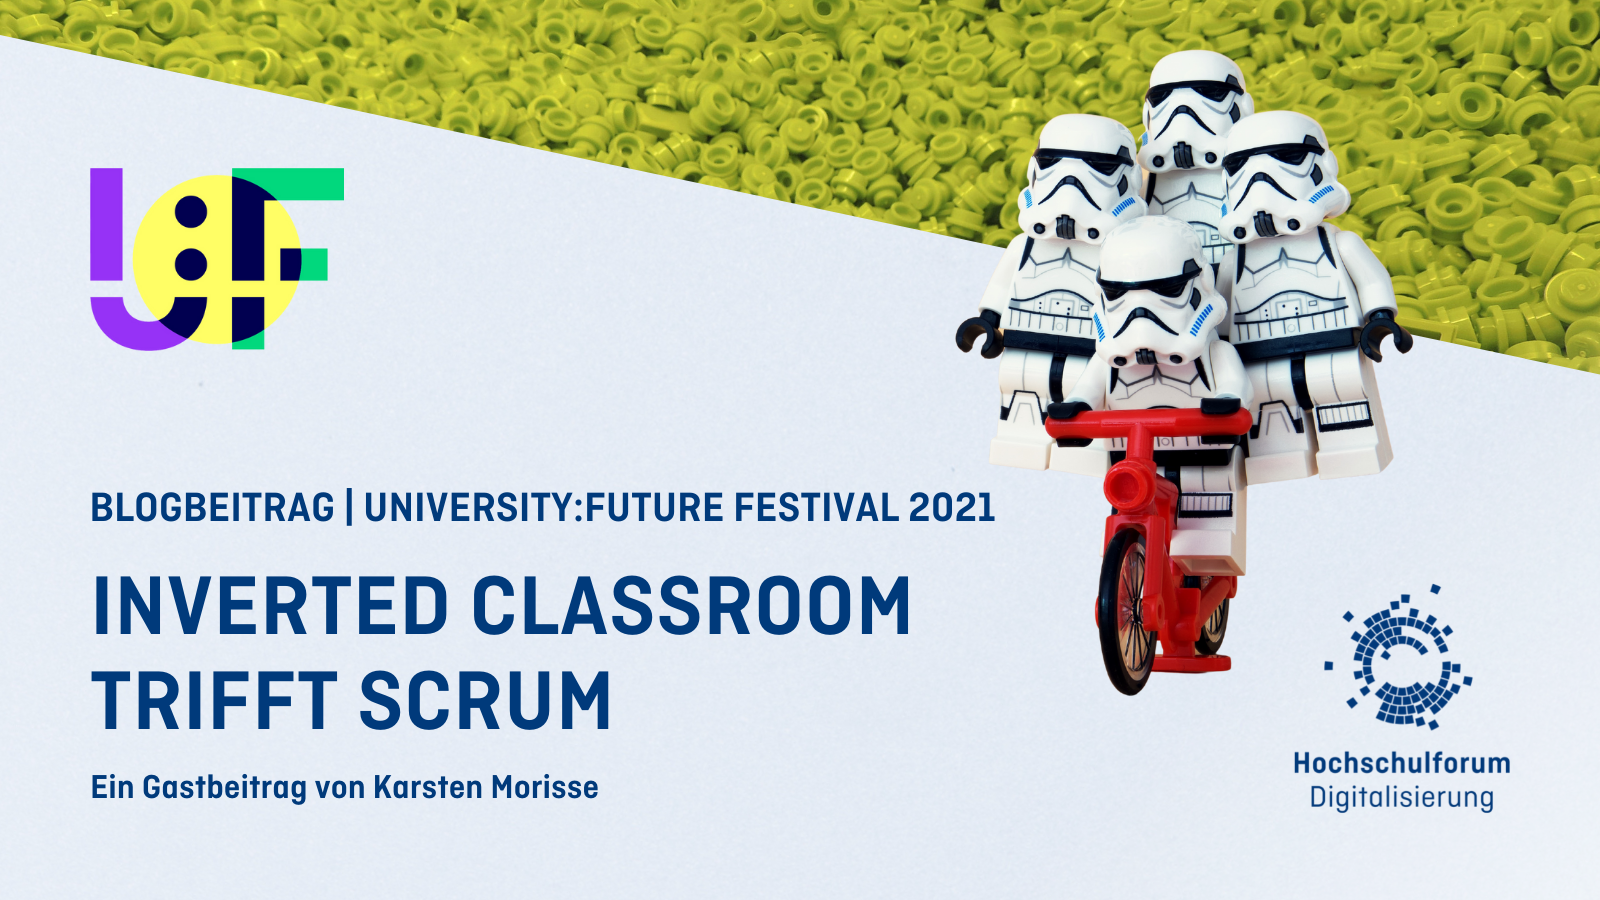 Titelbild: Inverted Classroom trifft Scrum, Logo: Hochschulforum Digitalisierung, University Future Festival 2021, Task Forces von Starwars auf Fahrrad